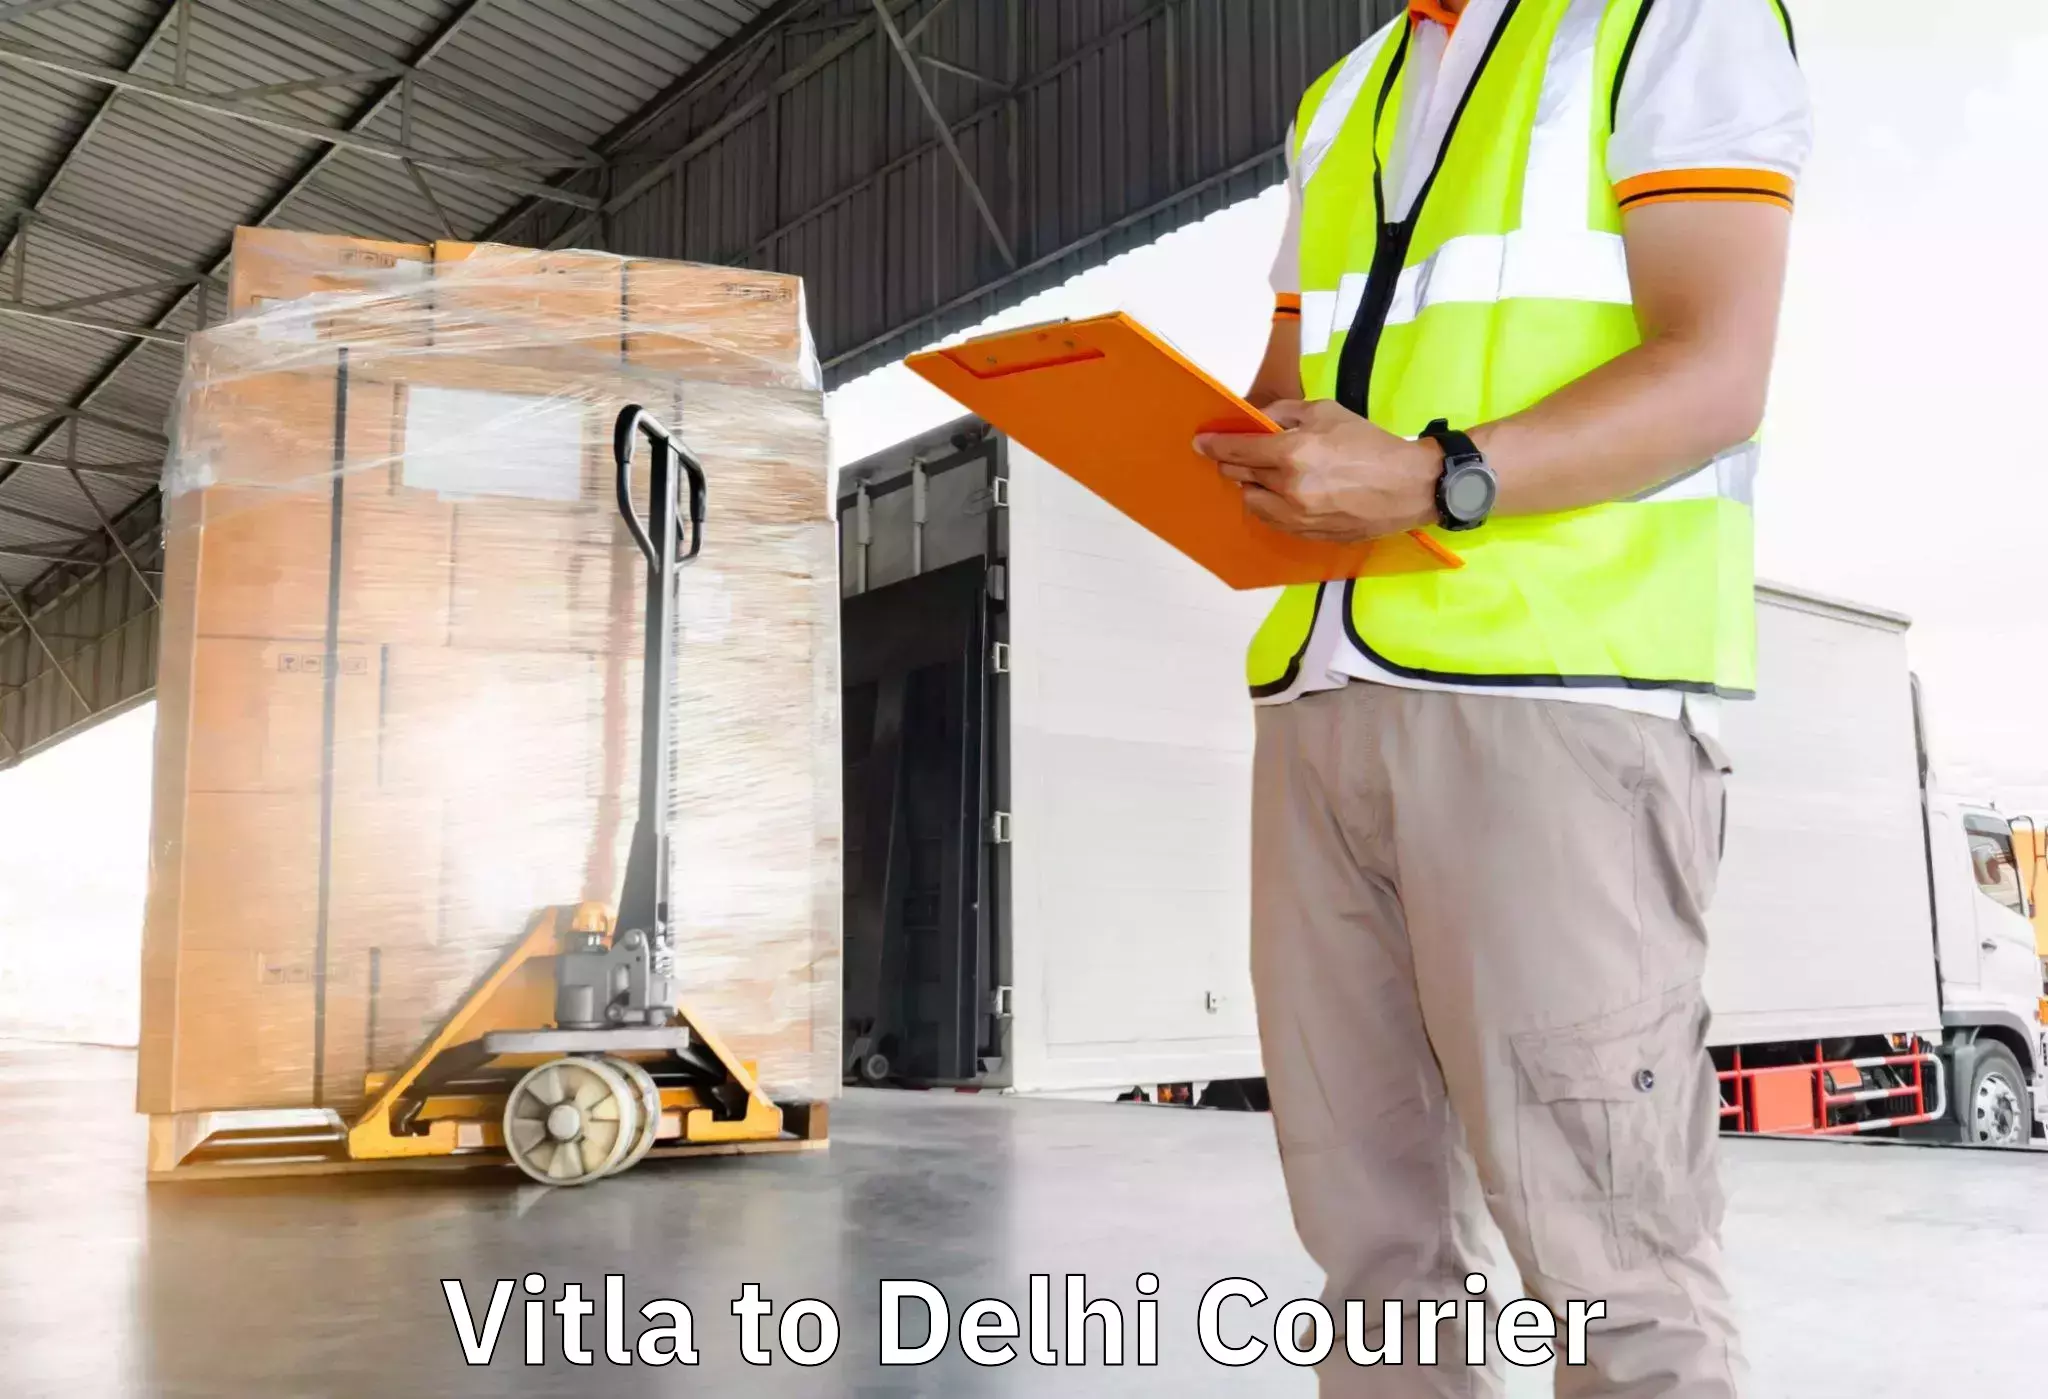 Furniture delivery service Vitla to Delhi